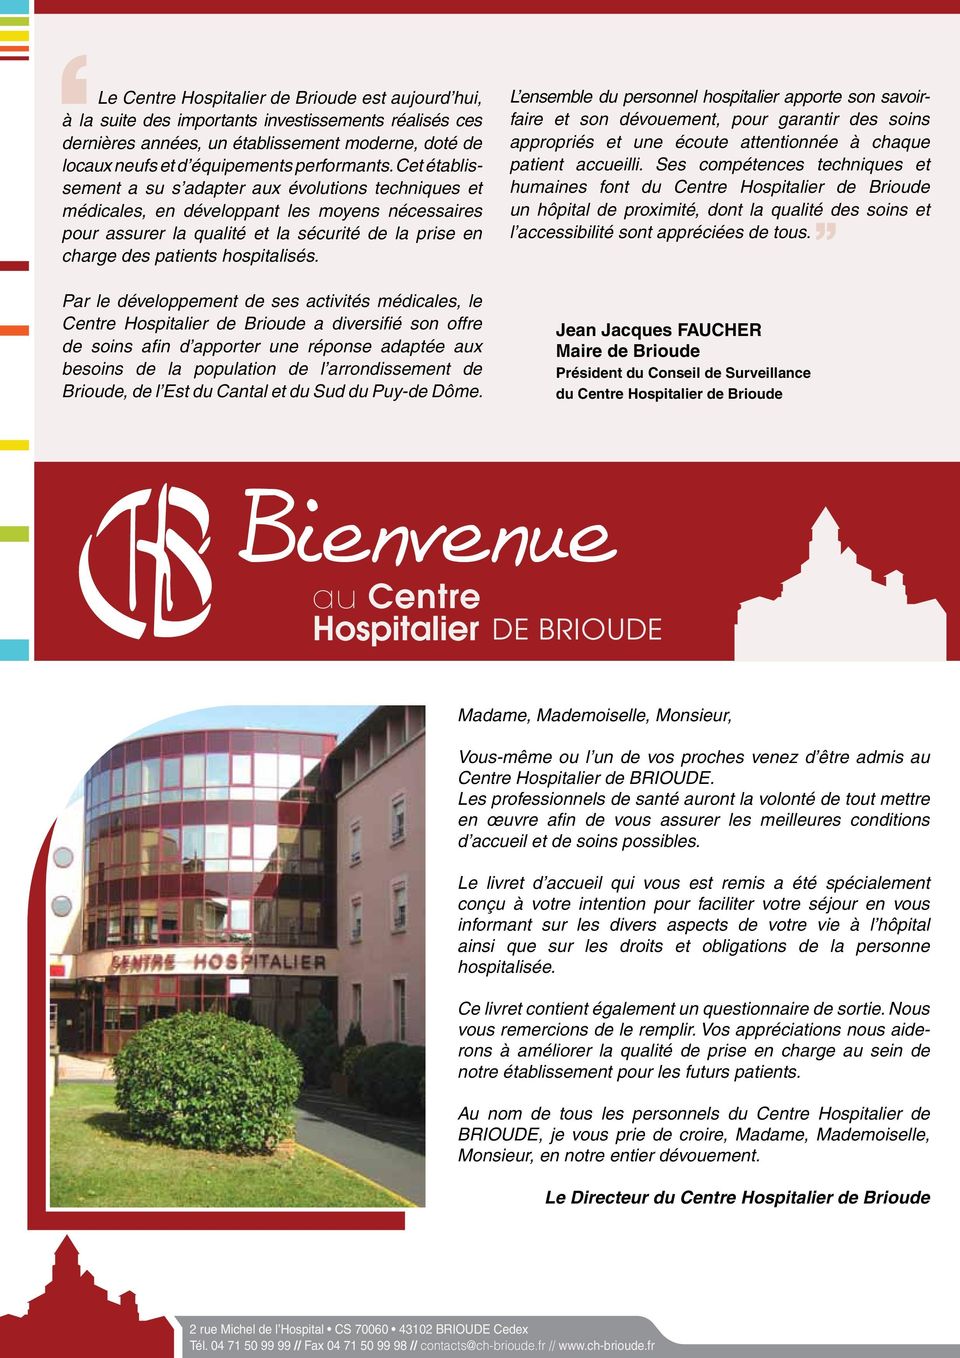 Par le développement de ses activités médicales, le Centre Hospitalier de Brioude a diversifié son offre de soins afin d apporter une réponse adaptée aux besoins de la population de l arrondissement